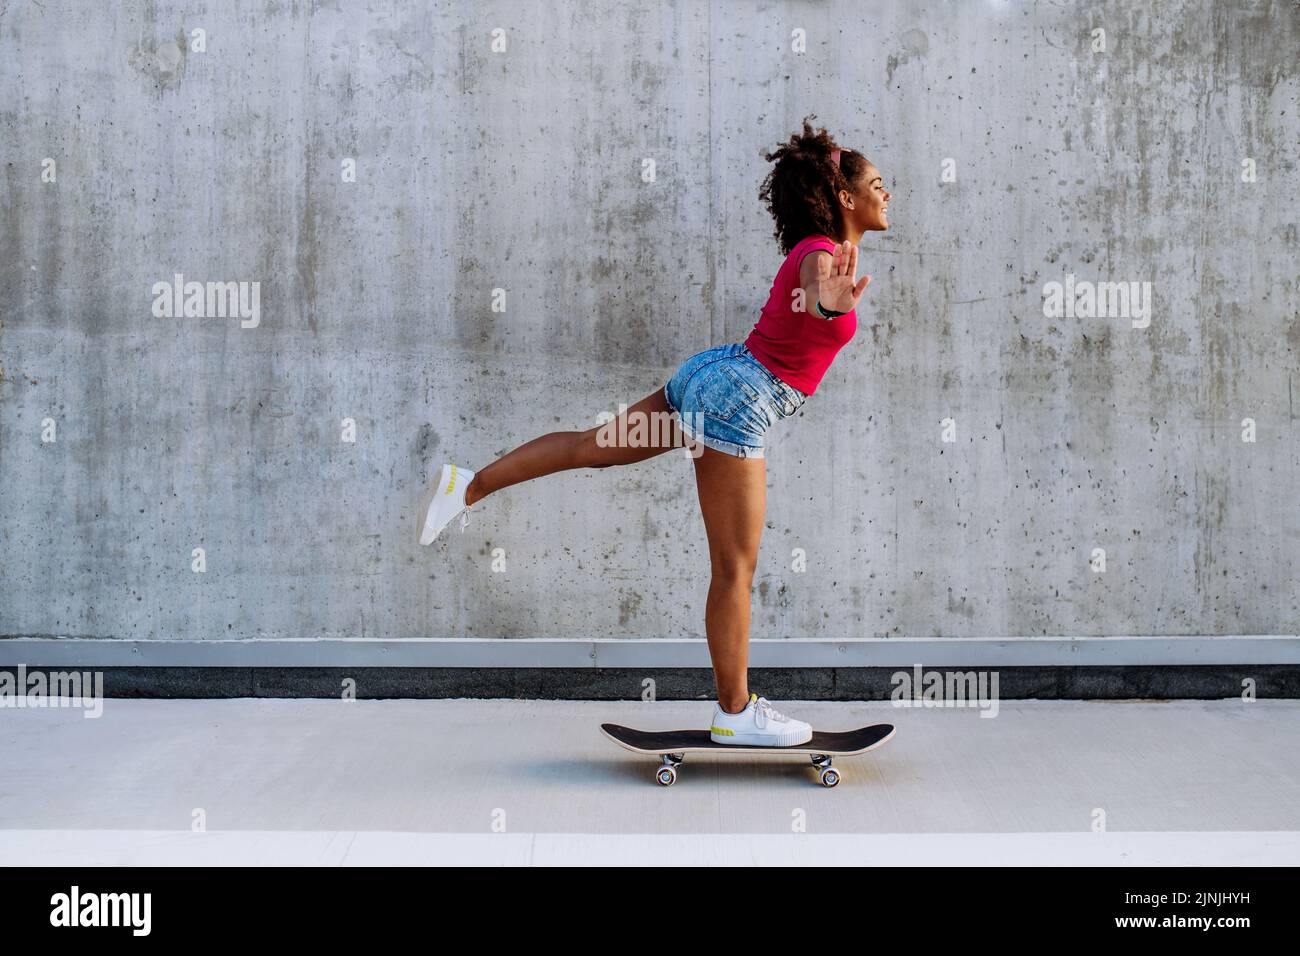 Ragazza adolescente multirazziale in sella a uno skateboard davanti a una parete di cemento, in piedi in una gamba, in equilibrio. Vista laterale. Foto Stock